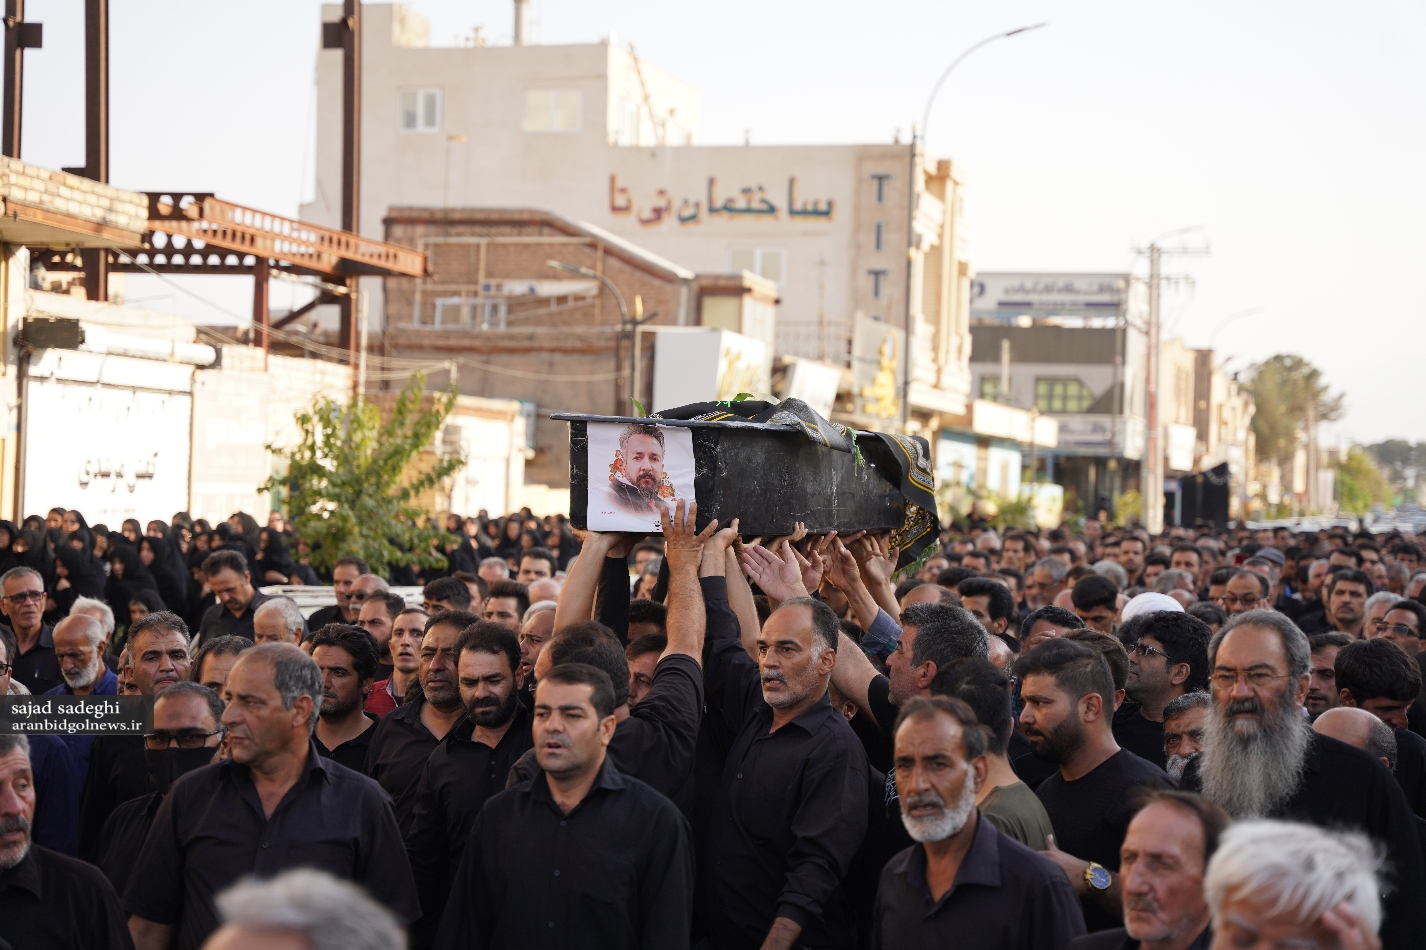 خادم اربعین حسینی در روز اربعین در آران و بیدگل به خاک سپرده شد